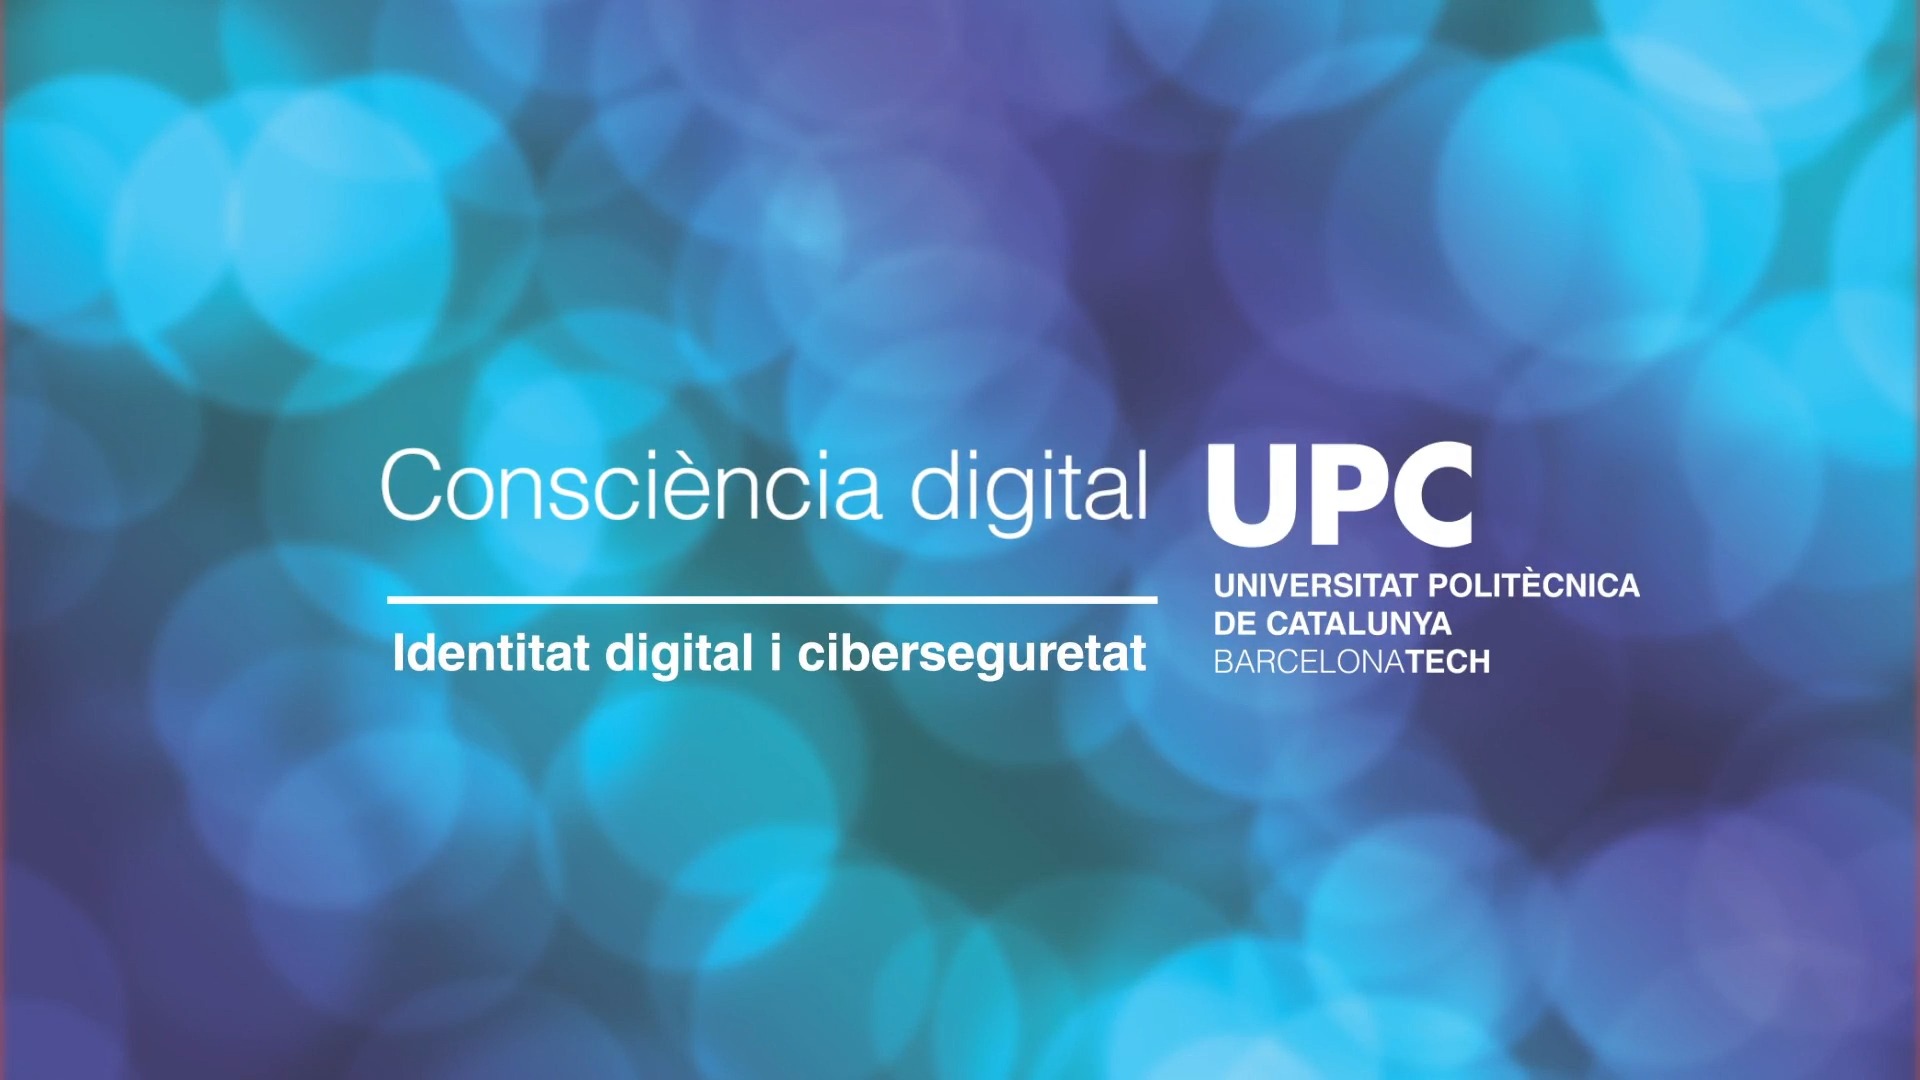 Consciència Digital: identitat digital i ciberseguretat